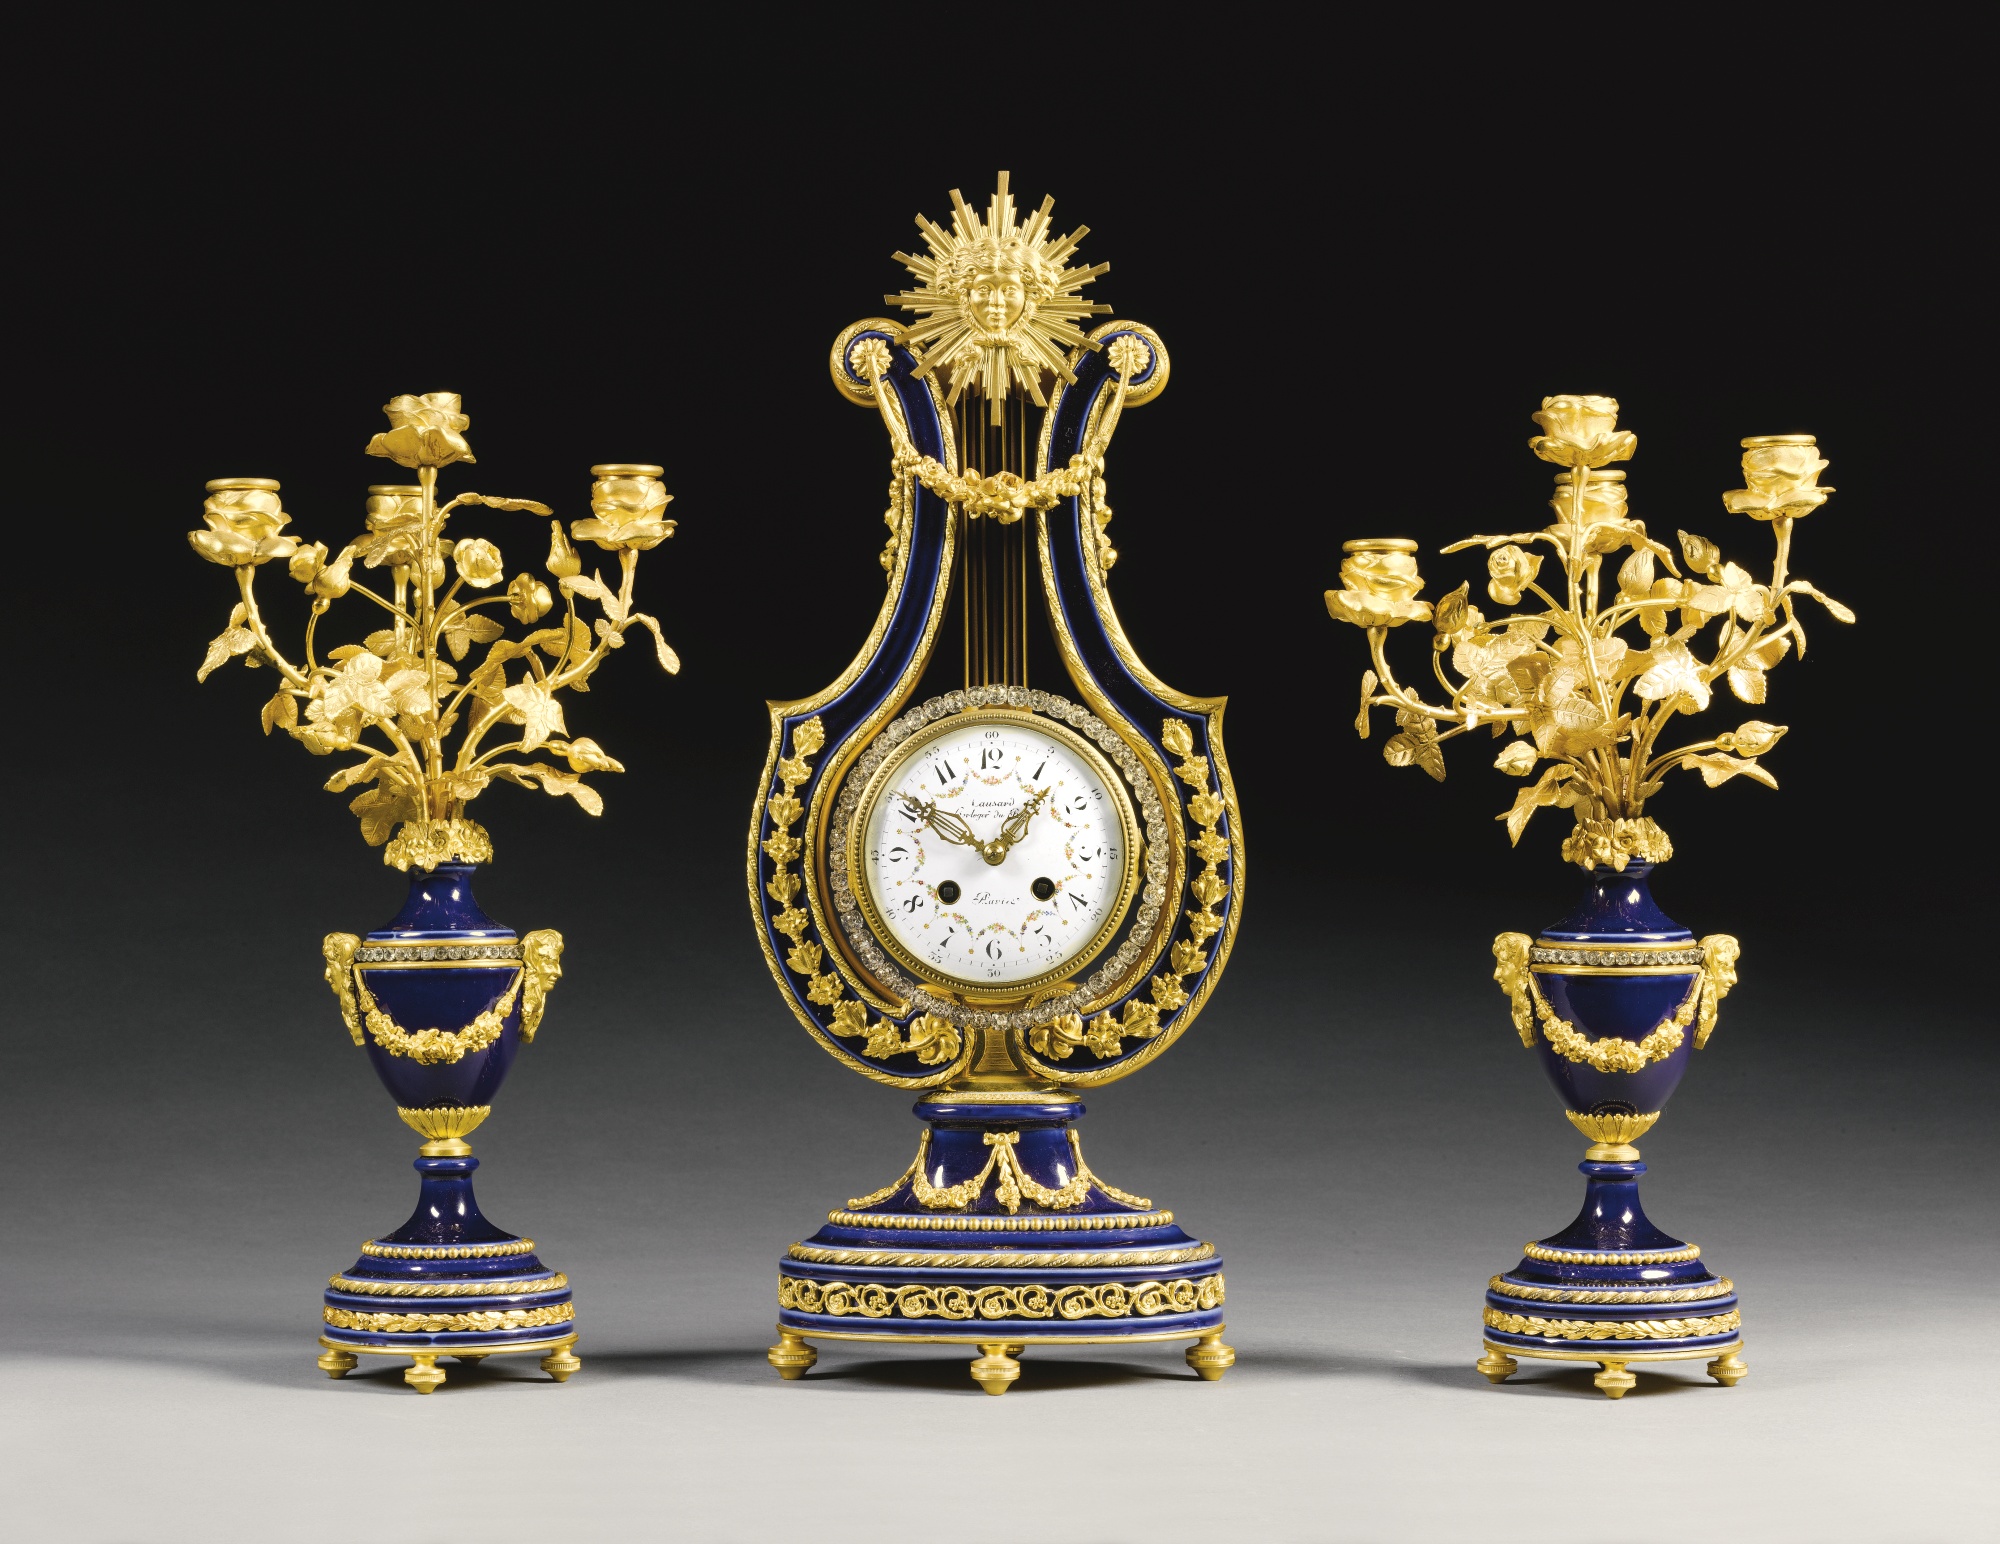 镶铜鎏金钴蓝色塞夫尔风格瓷片装饰摆件连钟一套三件, 巴黎,十九世纪